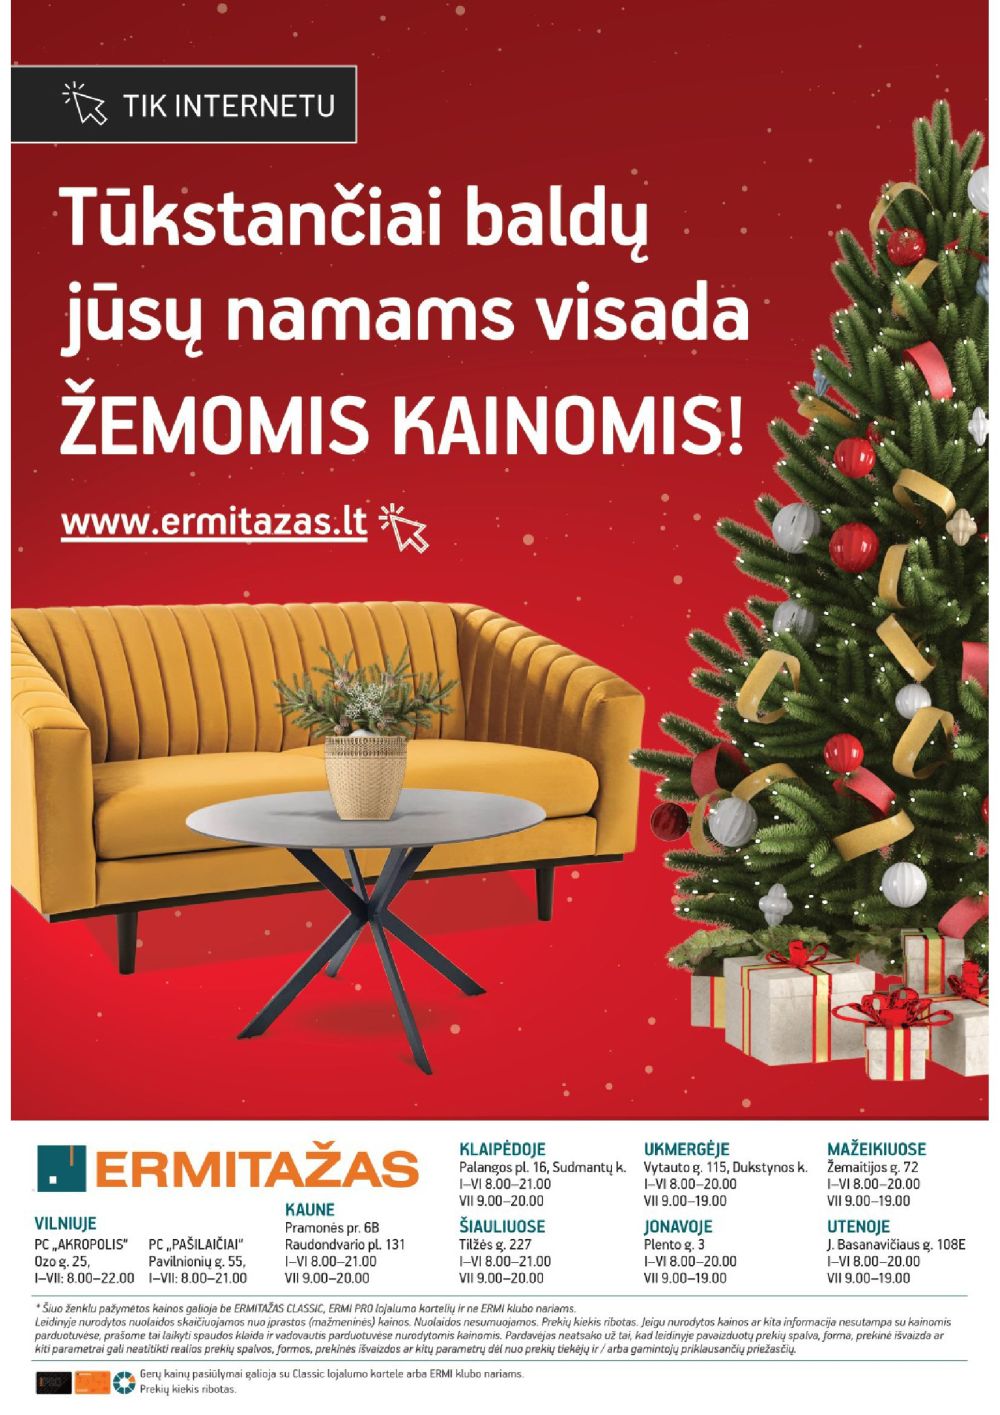 ermitazas - ERMITAŽAS - Kalėdų katalogas 2023 (2021 11 08 - 2023 12 19) - page: 34